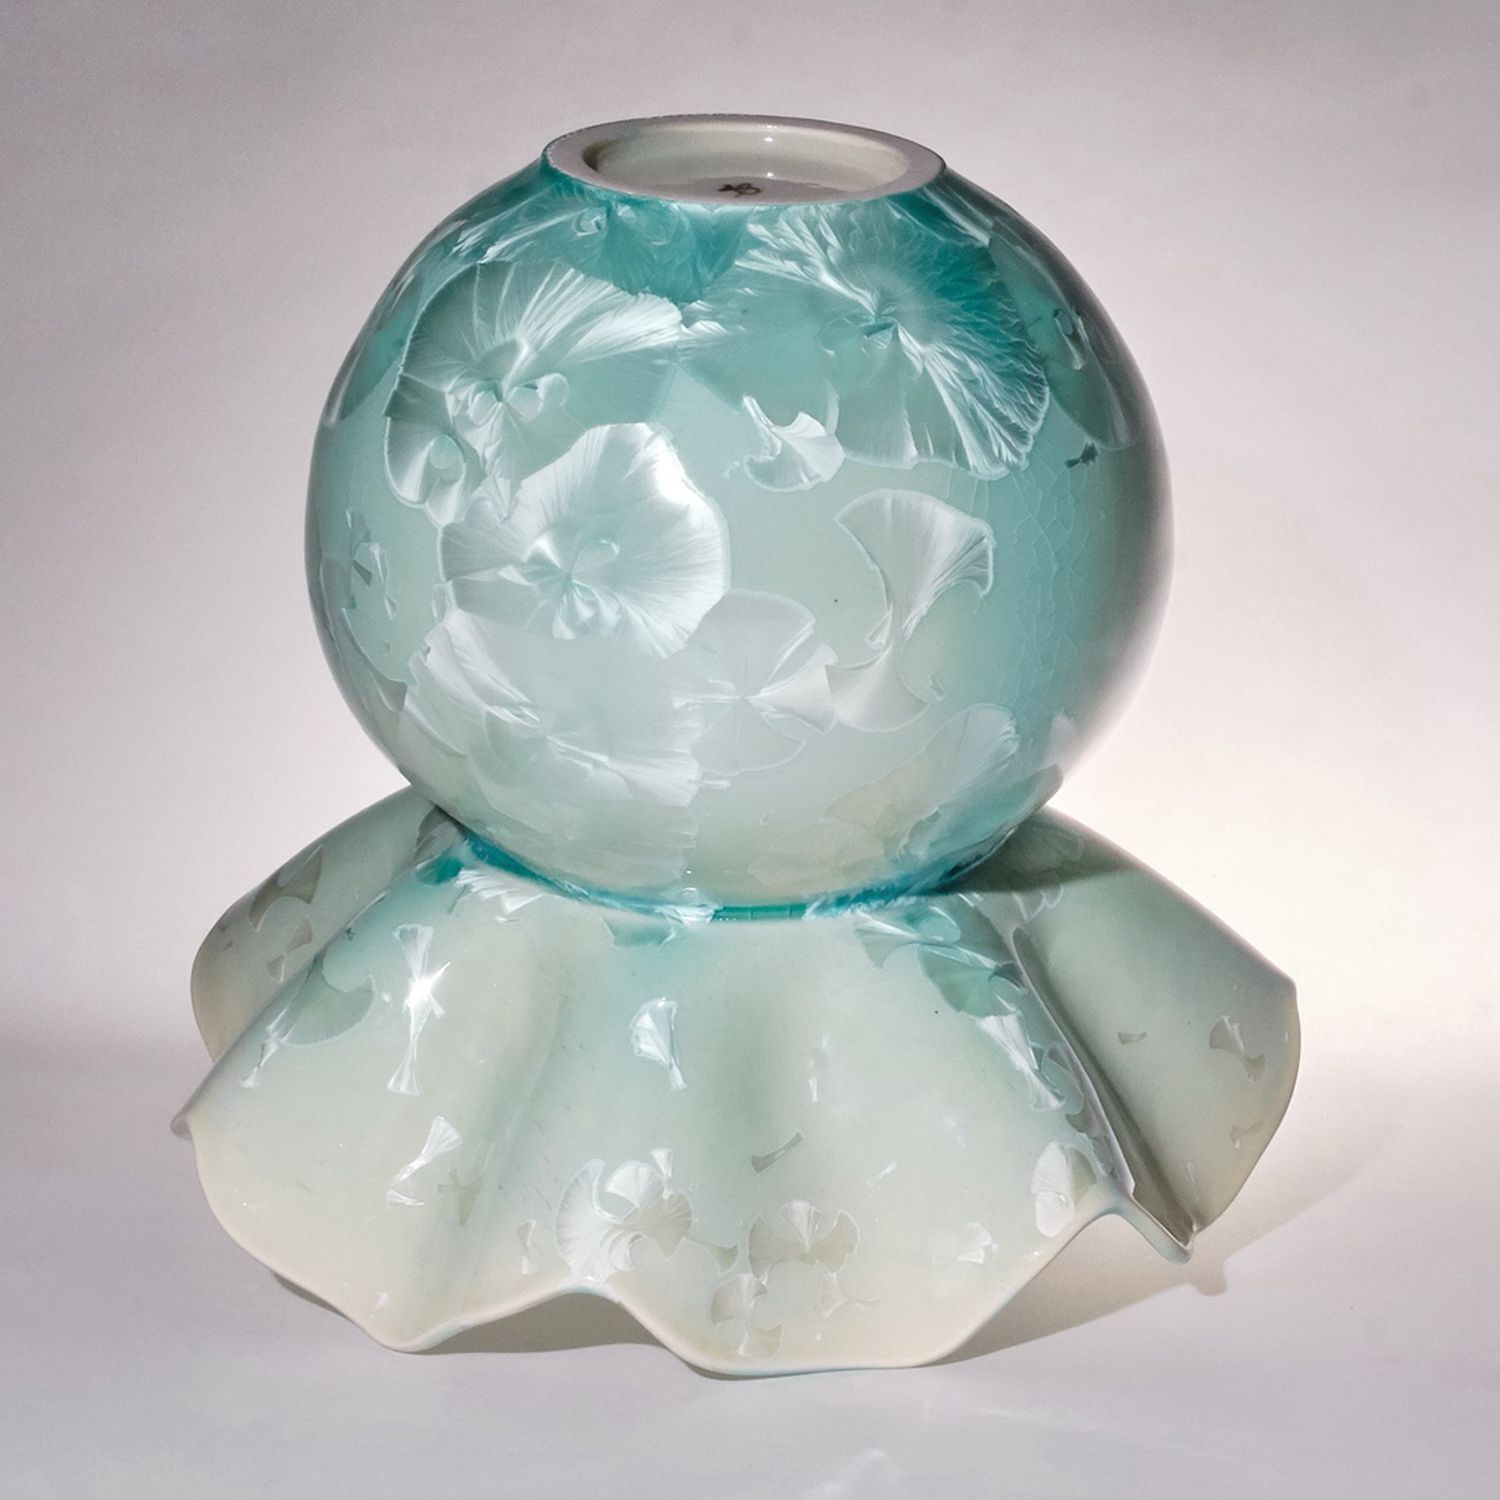 Yumiko Katsuya: Light Turquoise Flared Vase Product Image 2 of 2